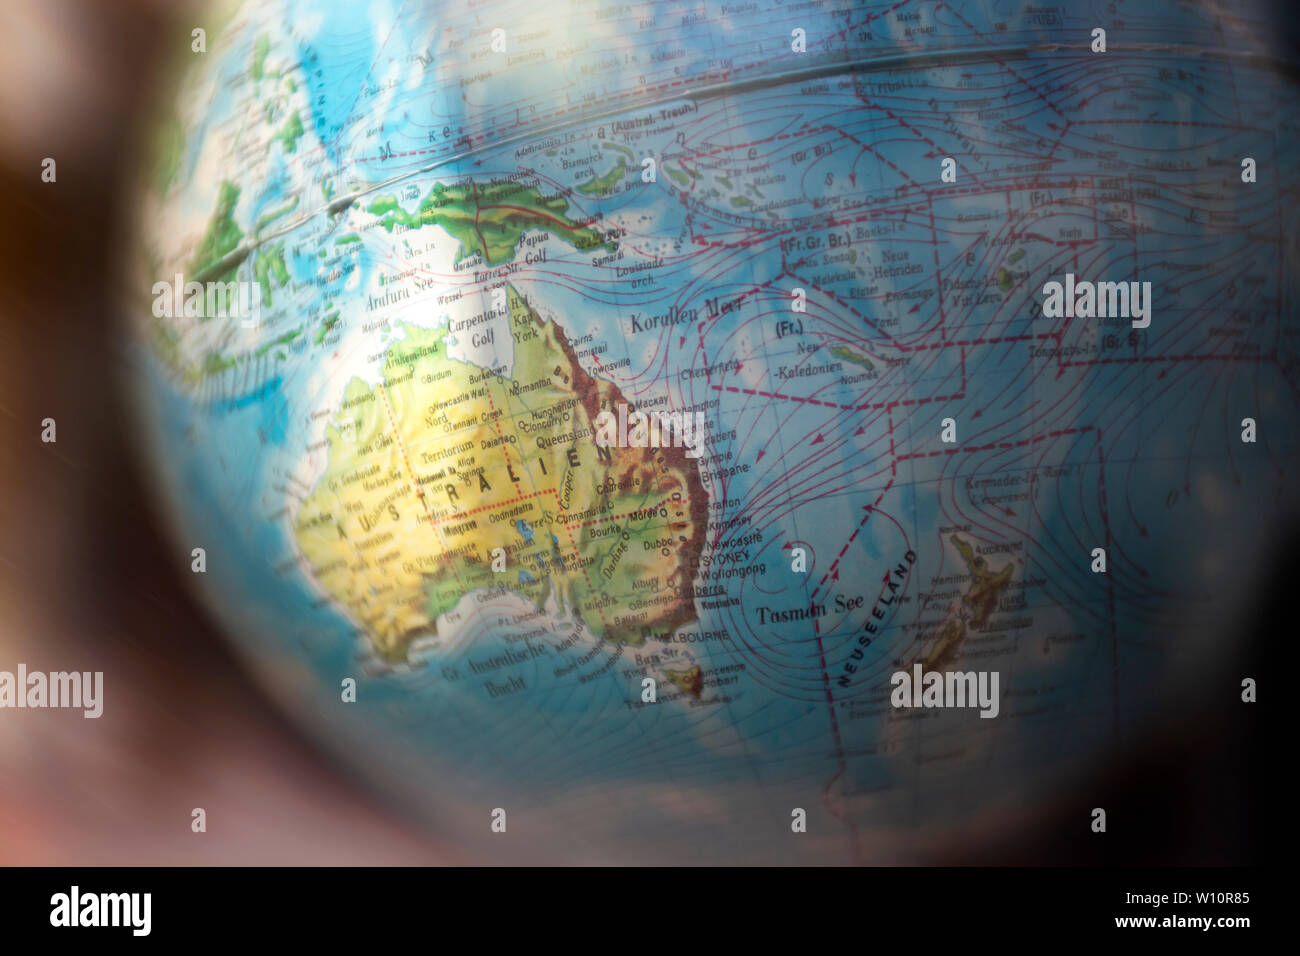 Globus der Welt mit Focus und Highlight auf Australien. Die Namen der Orte sind in deutscher Sprache. Der Hintergrund hat eine leichte Bewegungsunschärfe. Eine Reise Grafik Stockfoto